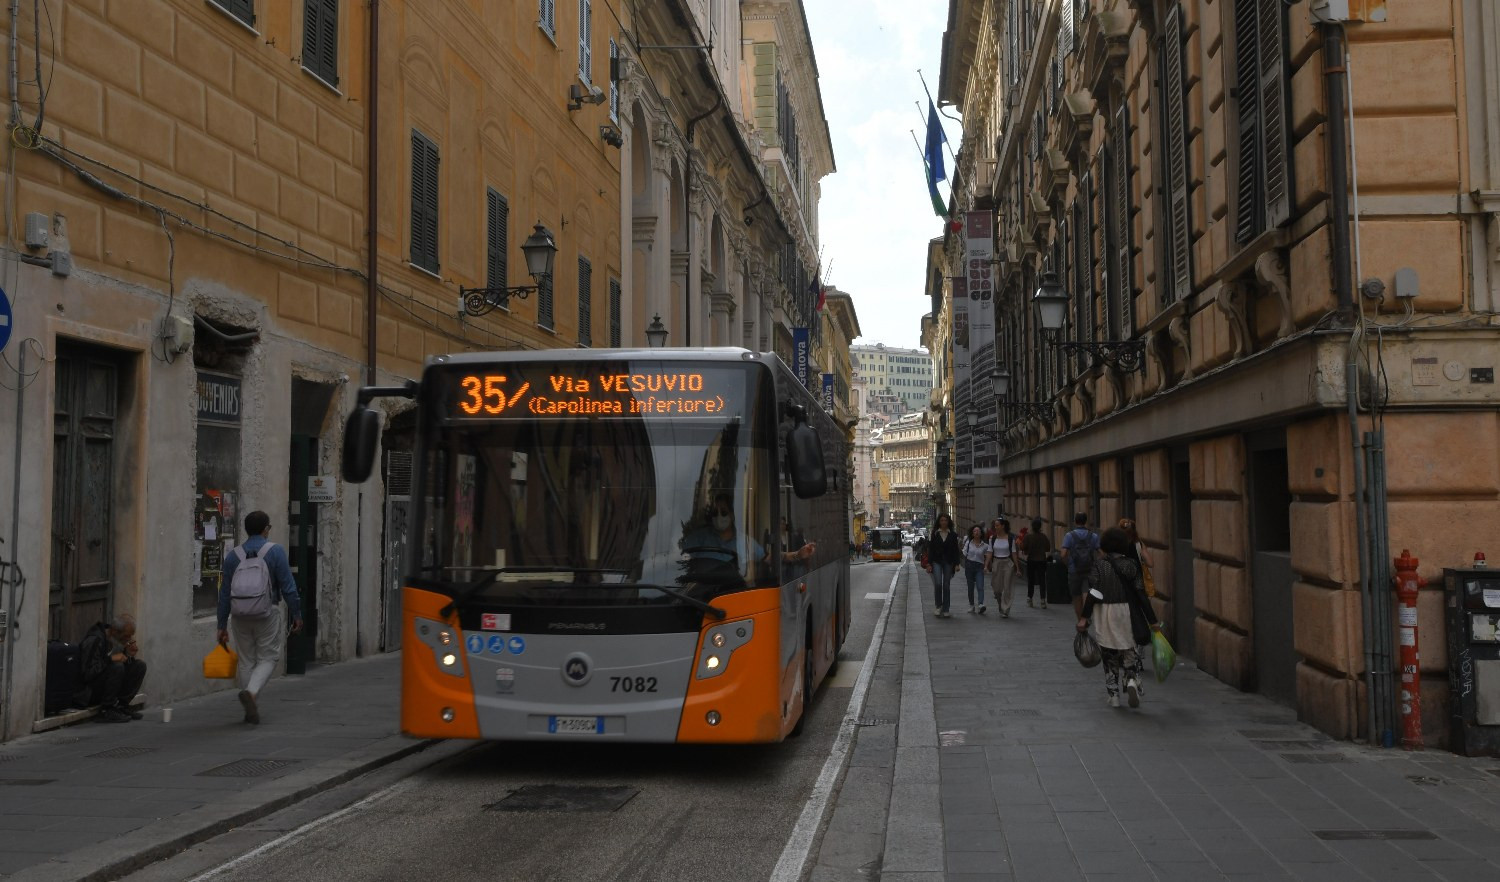 Trasporto pubblico gratis, Genova sulla scia di Montpellier e Tallin